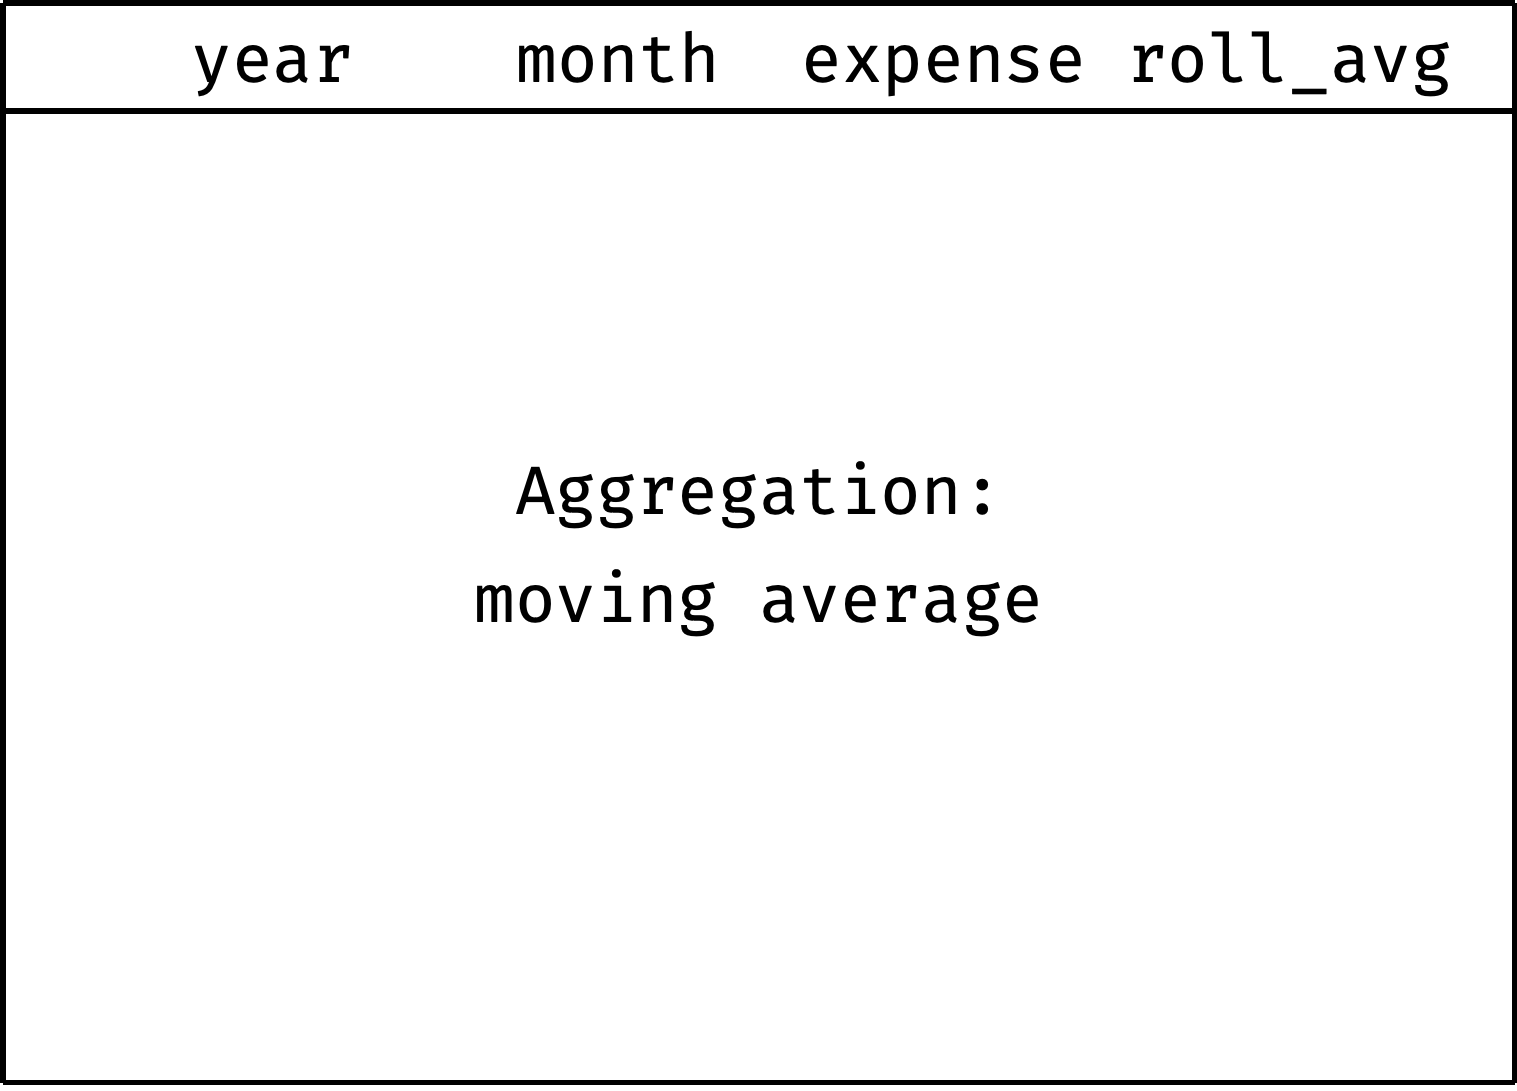 Moving average animation